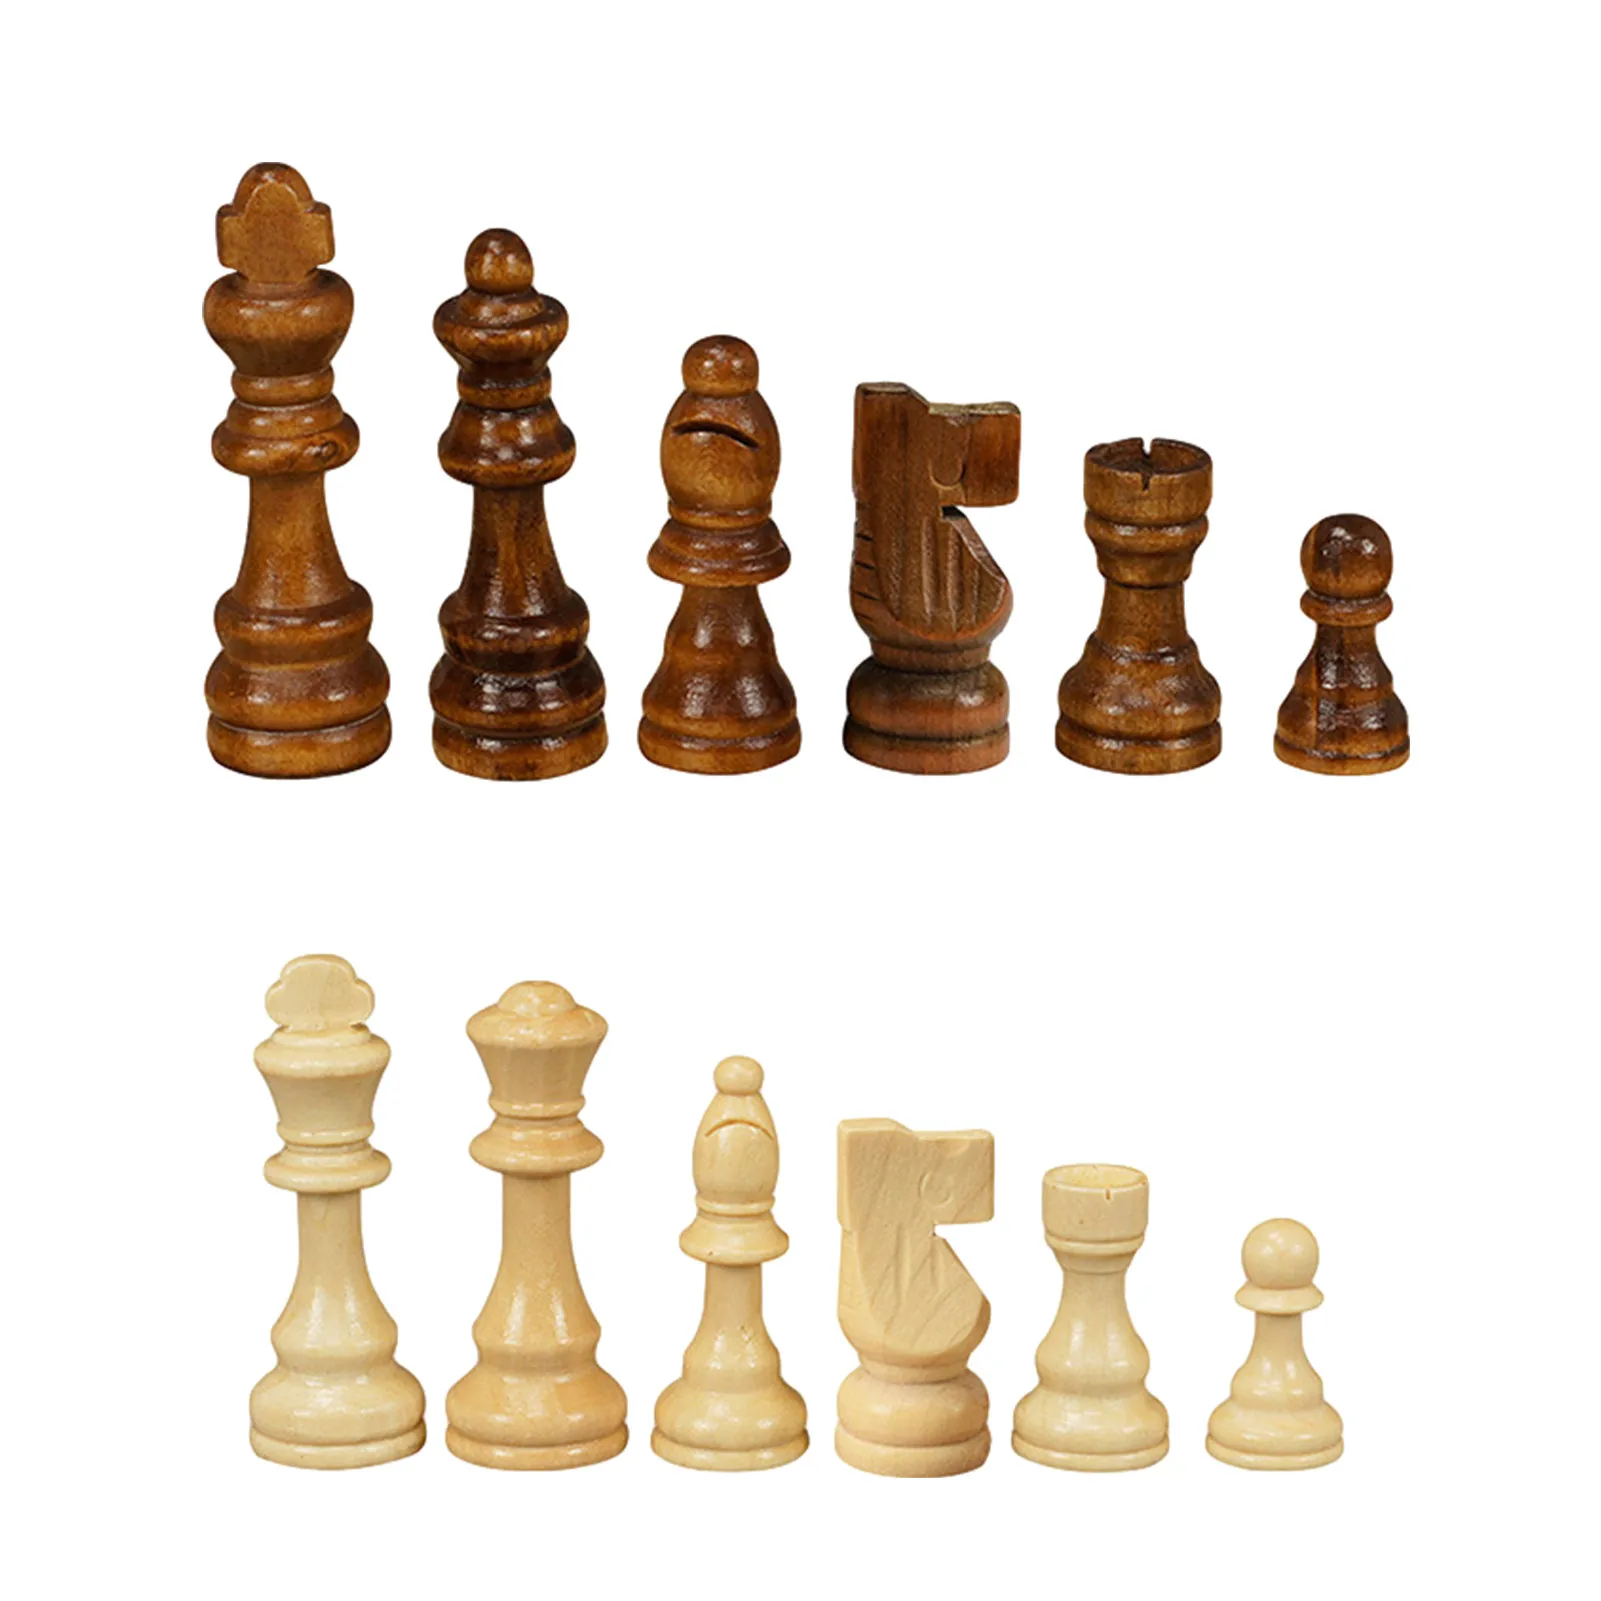 Peças de xadrez, peças de xadrez de madeira com 2,17 pol. King madeira  peças de xadrez com filme plástico tabuleiro de xadrez para adultos crianças  brinquedo